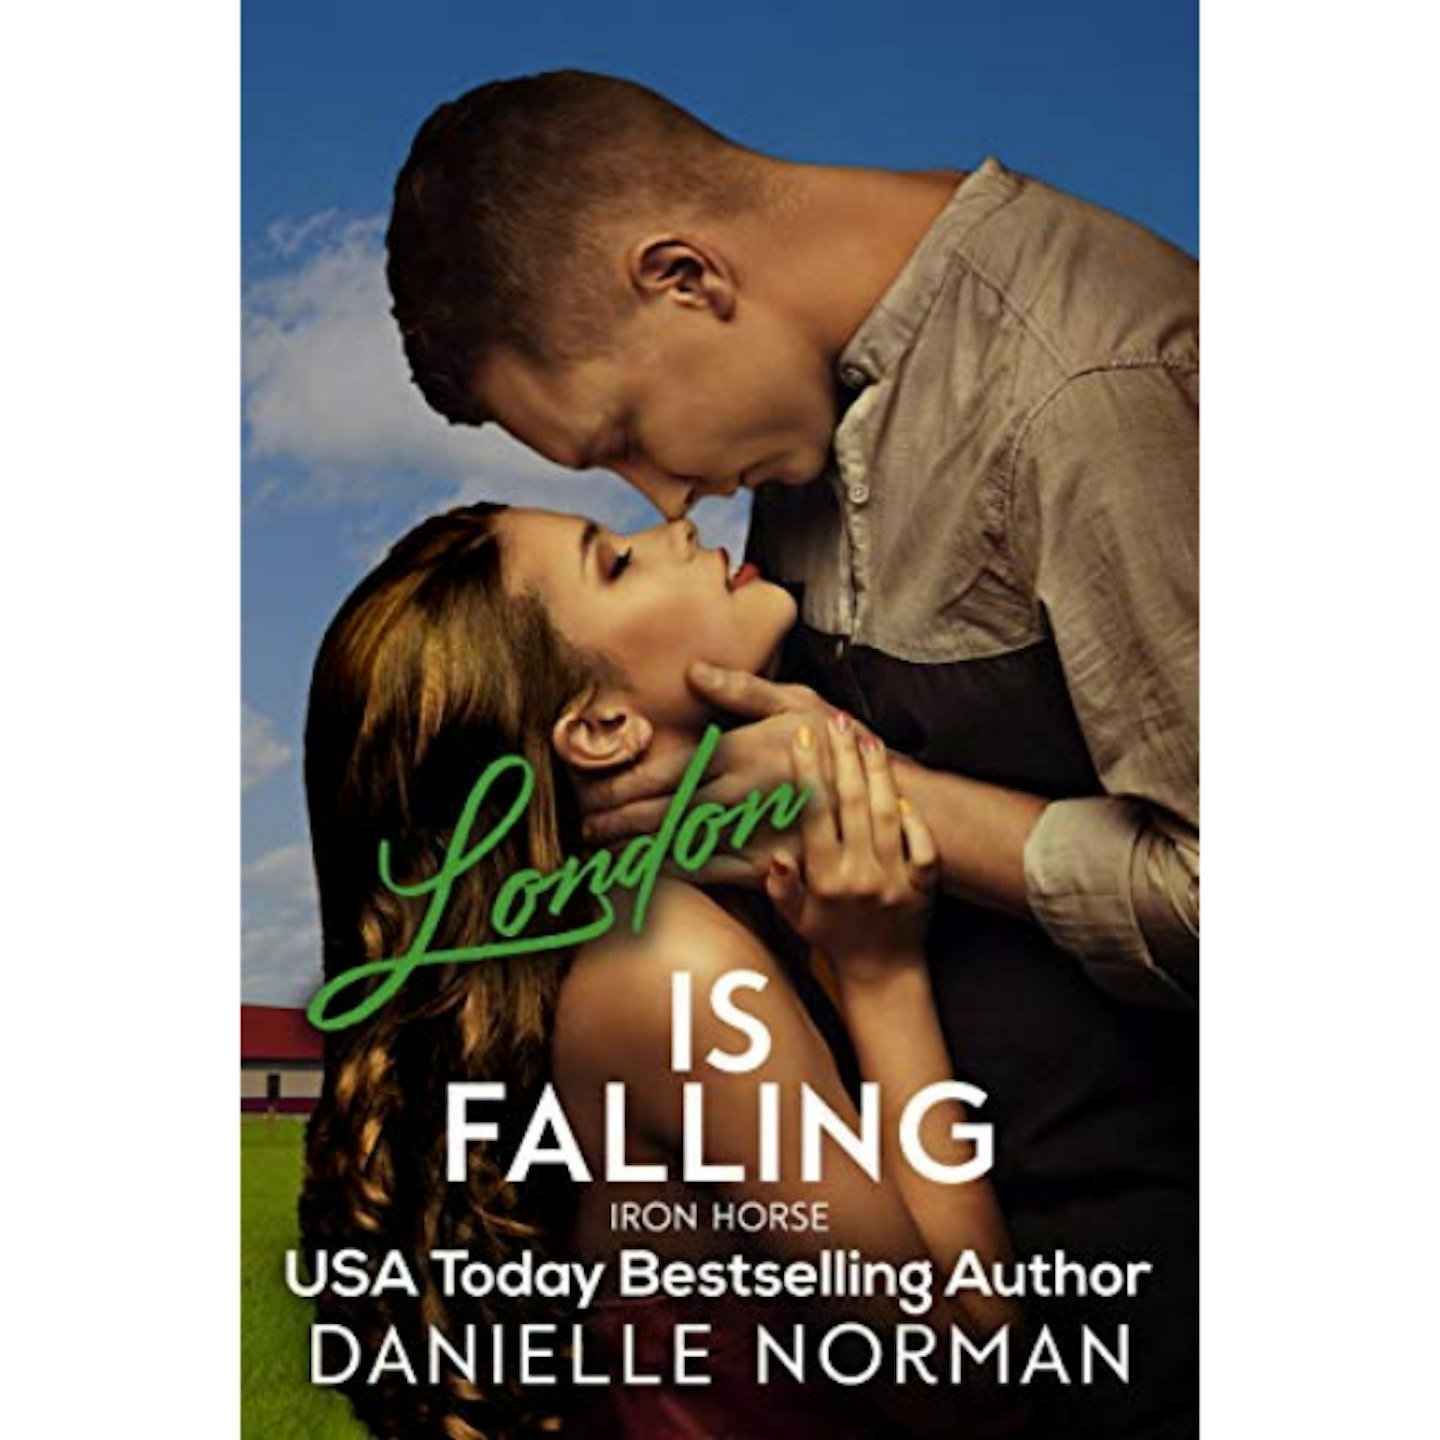 London, Is Falling by Danielle Norman